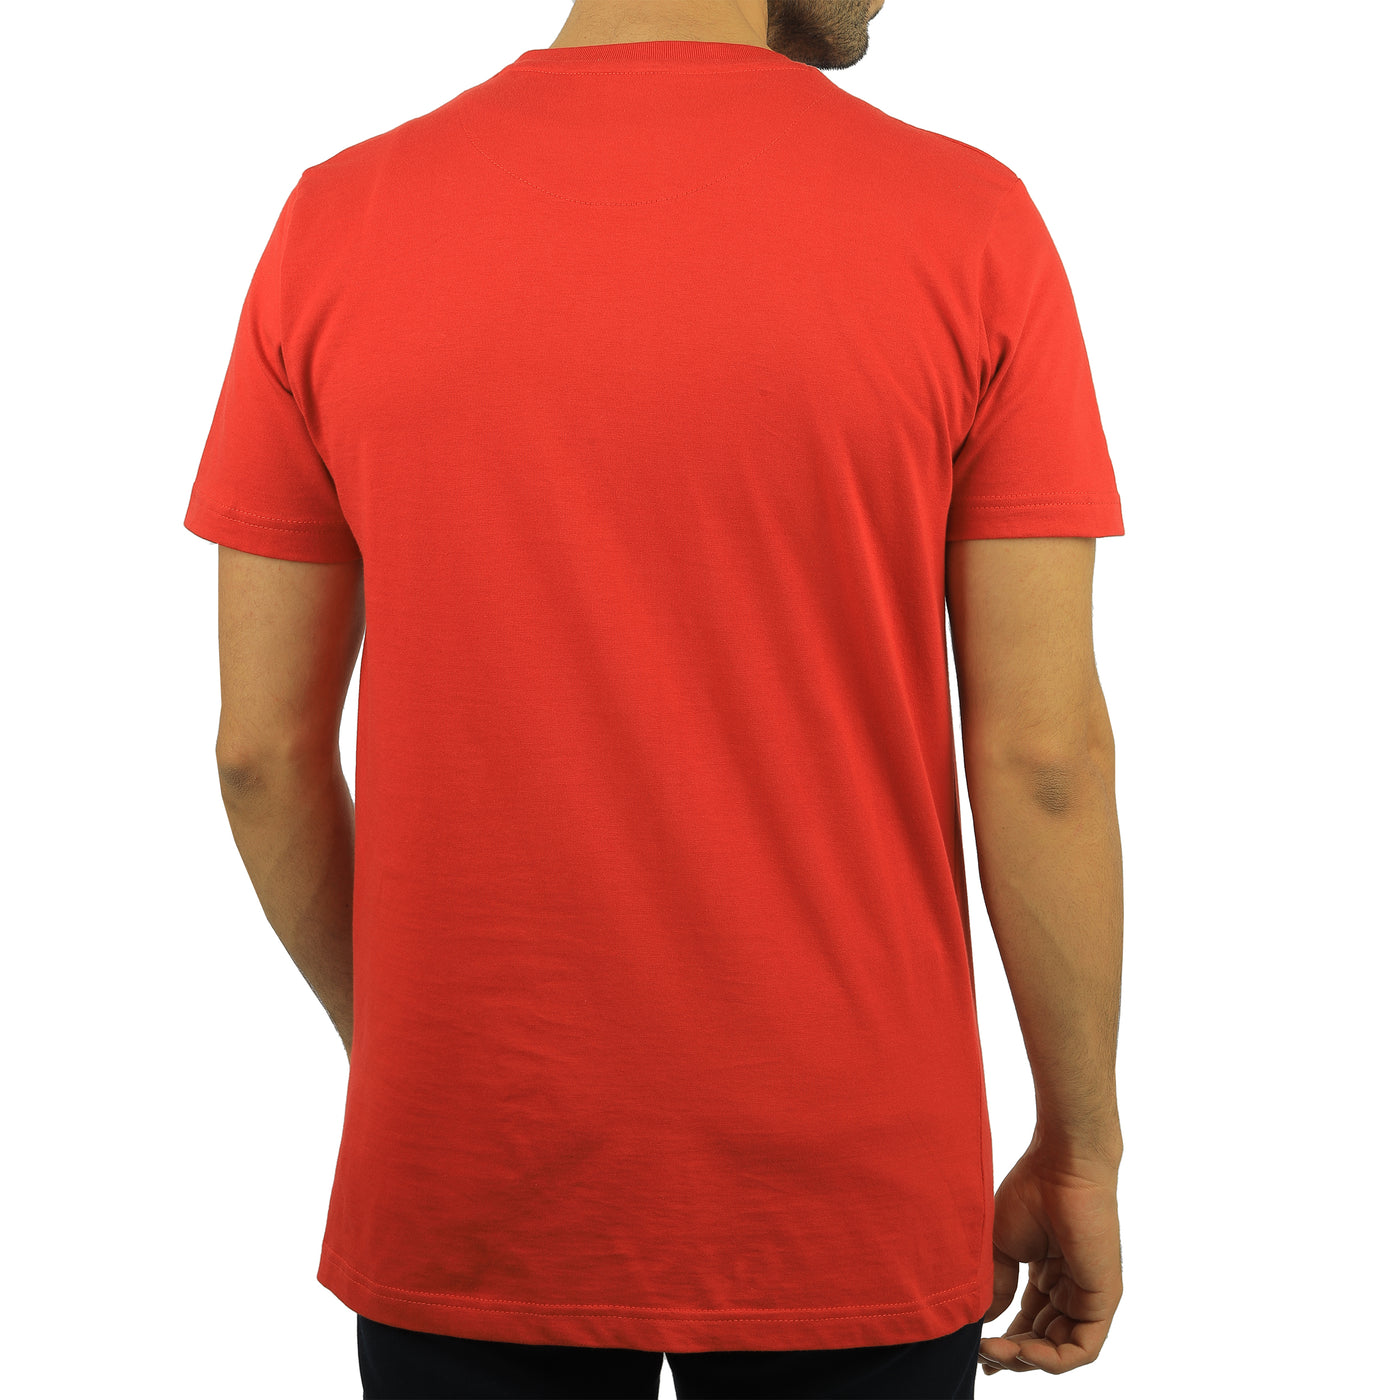 Red round T-shirt